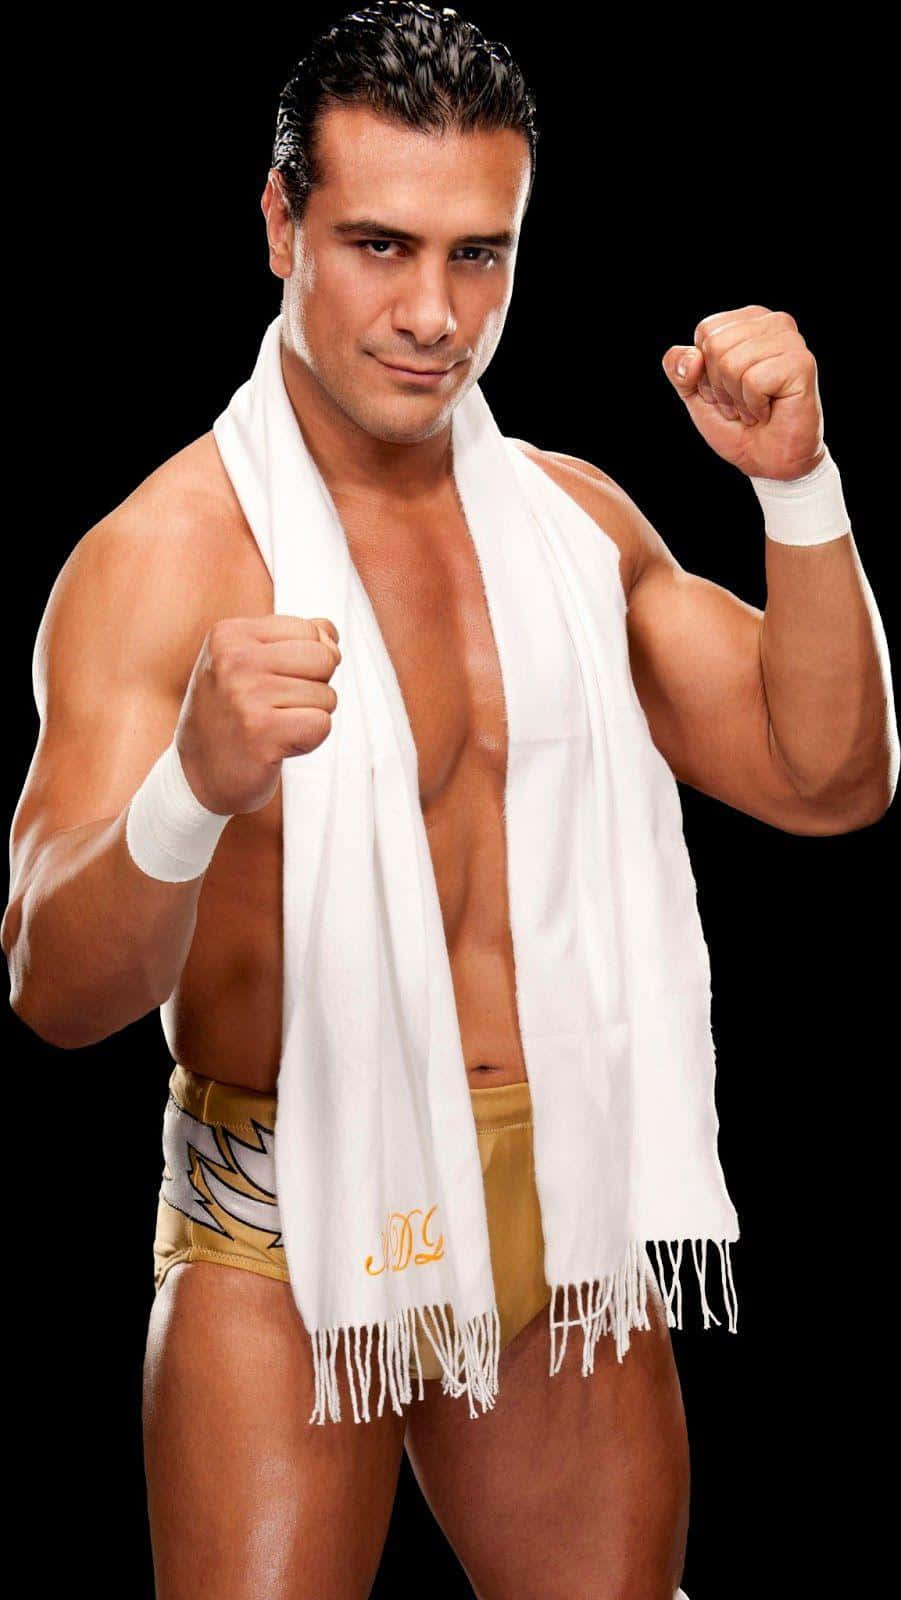 WWE Star Alberto Del Rio Portrait Wallpaper